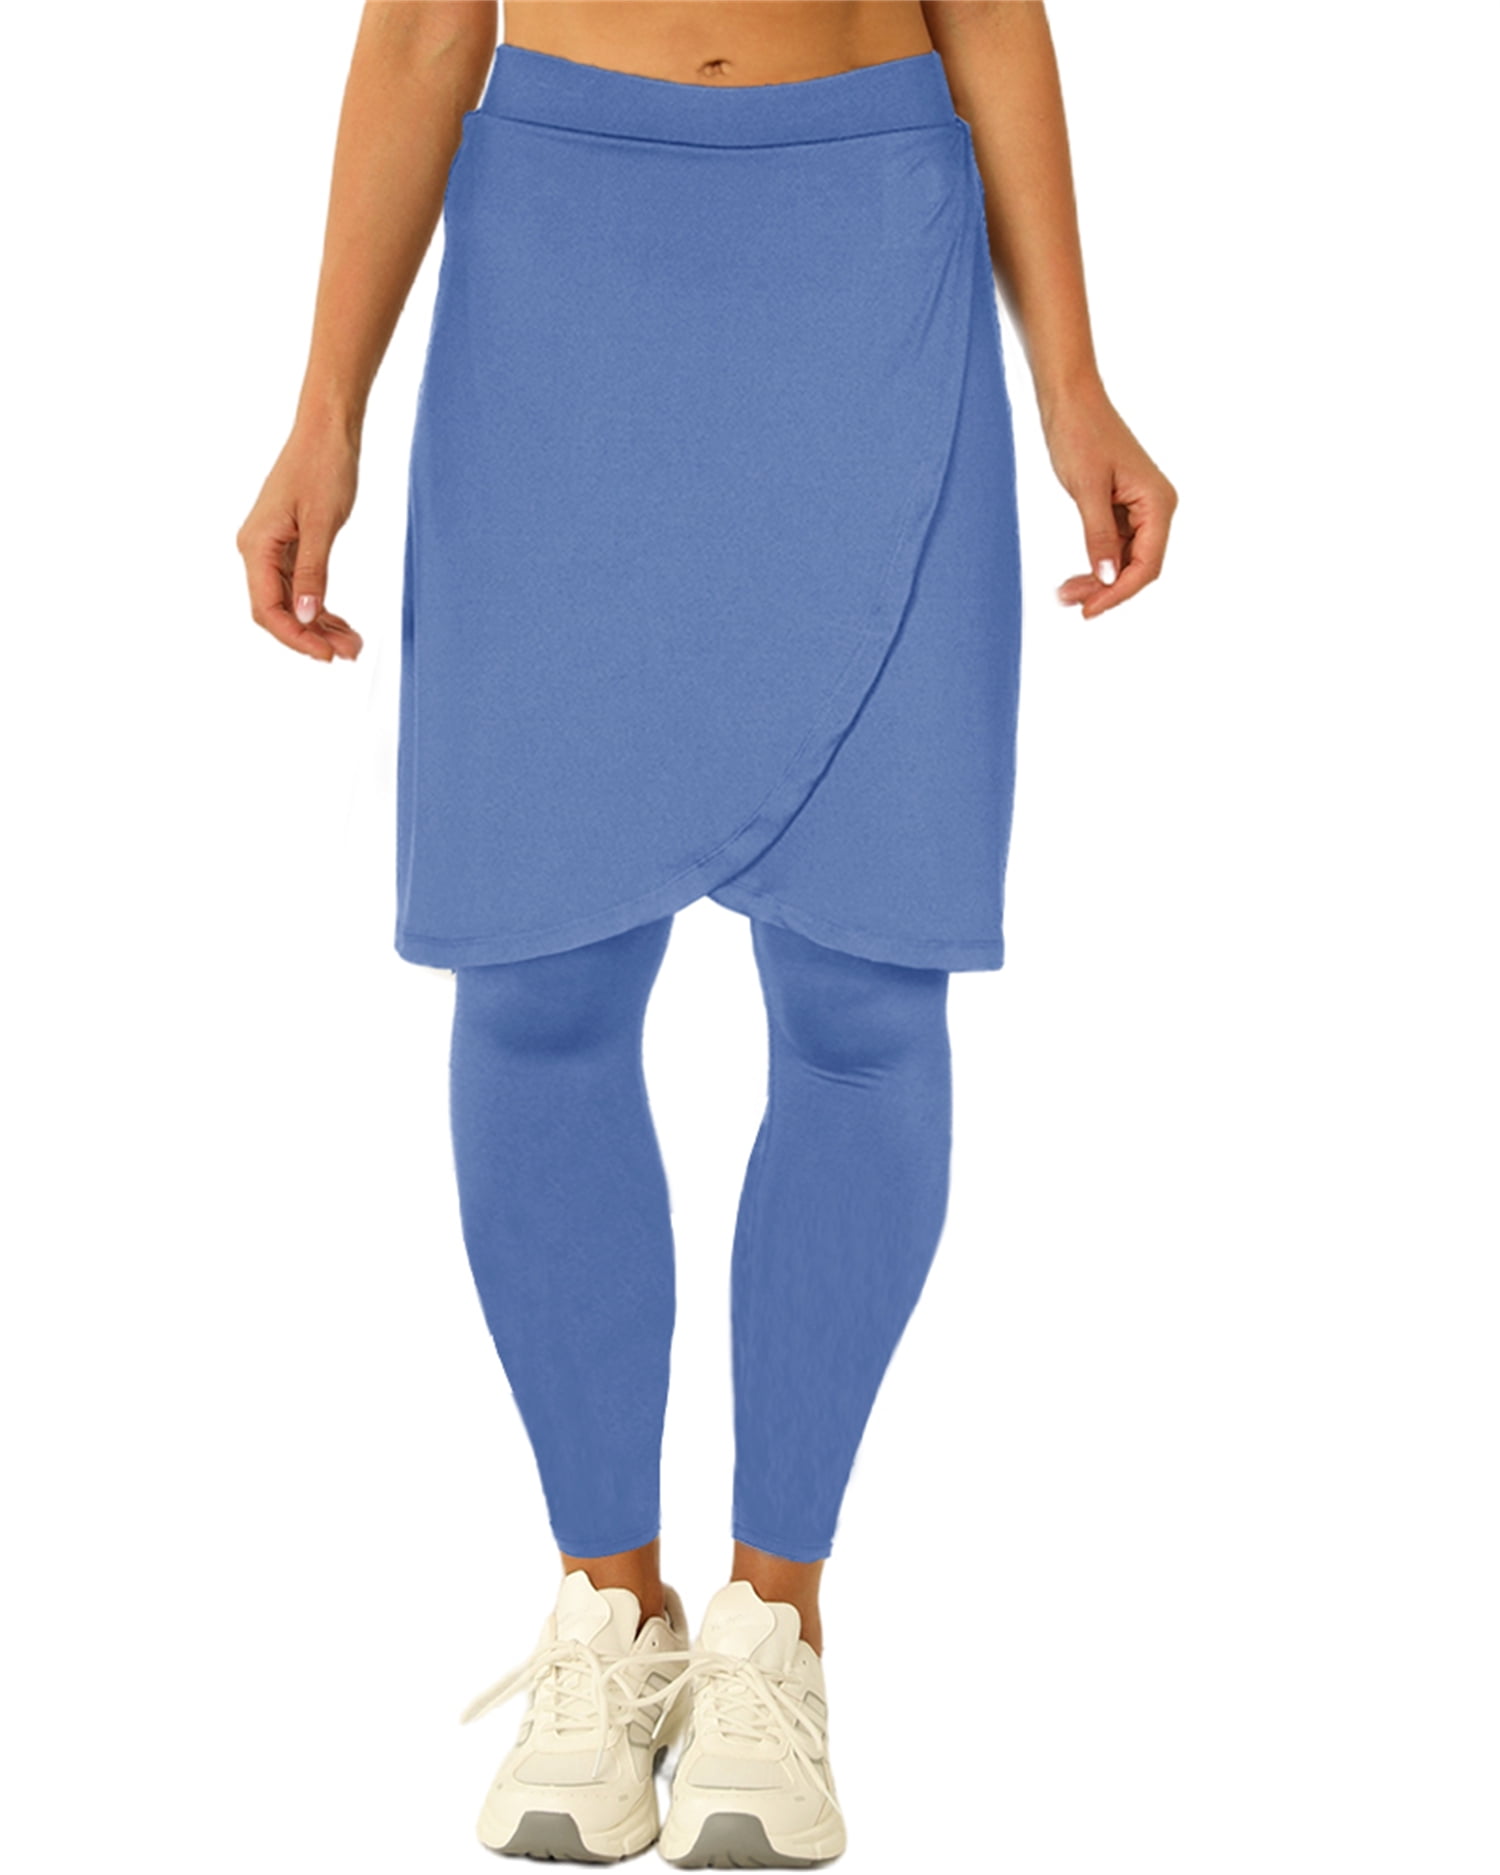 Yskkt Womens Tennis Skirt with Capri Leggings Knee Length Athletic ...